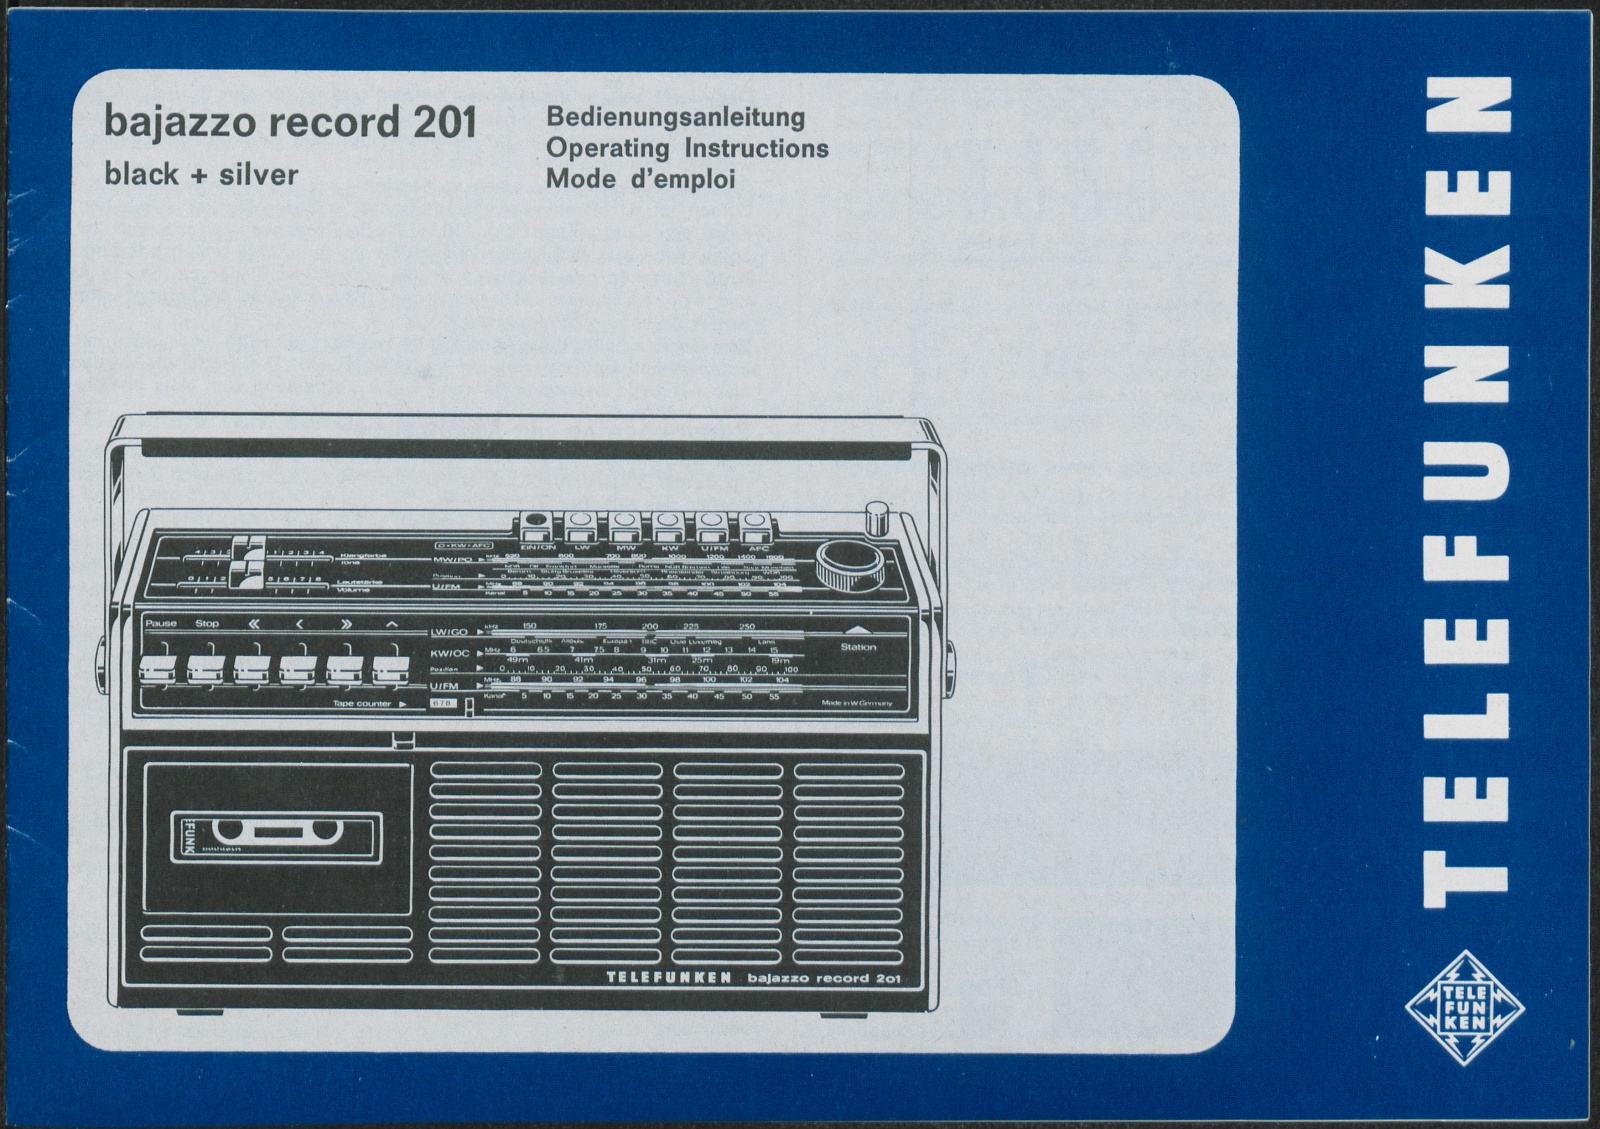 Bedienungsanleitung: Bedienungsanleitung Telefunken bajazzo record 201 (Stiftung Deutsches Technikmuseum Berlin CC0)